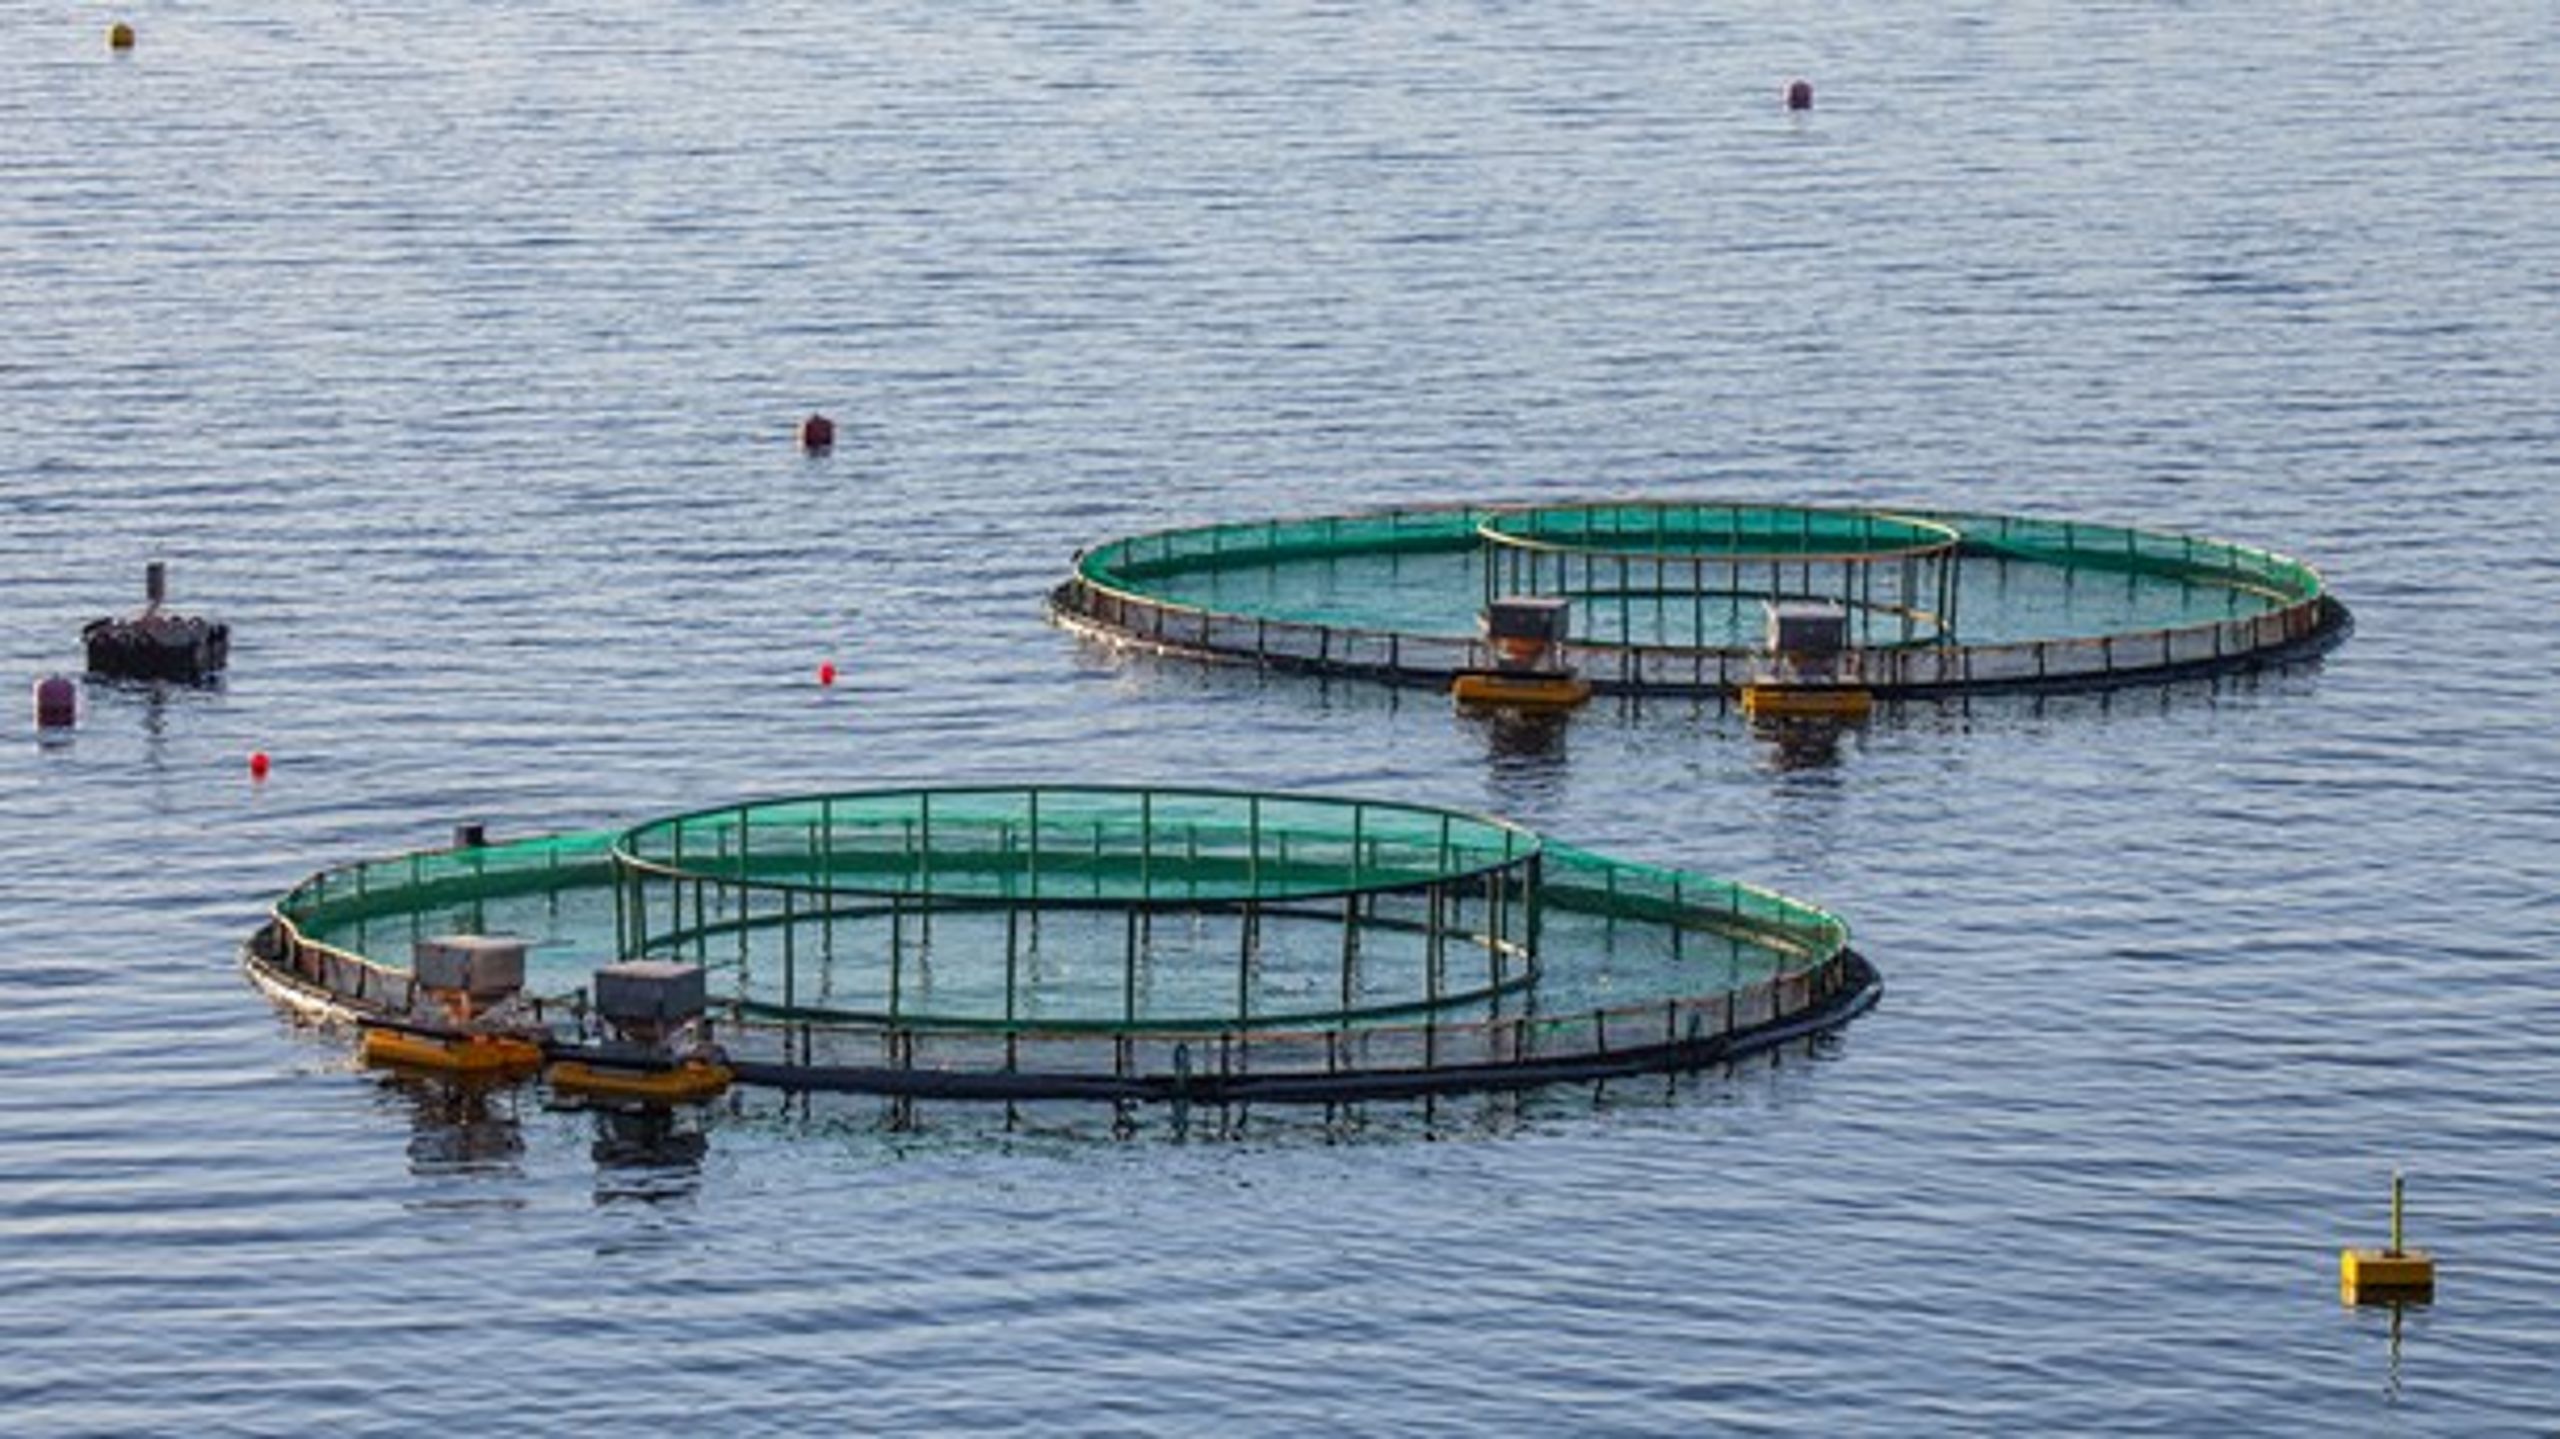 Annlegg for fiskeoppdrett ved Gjermundnes i Møre og Romsdal